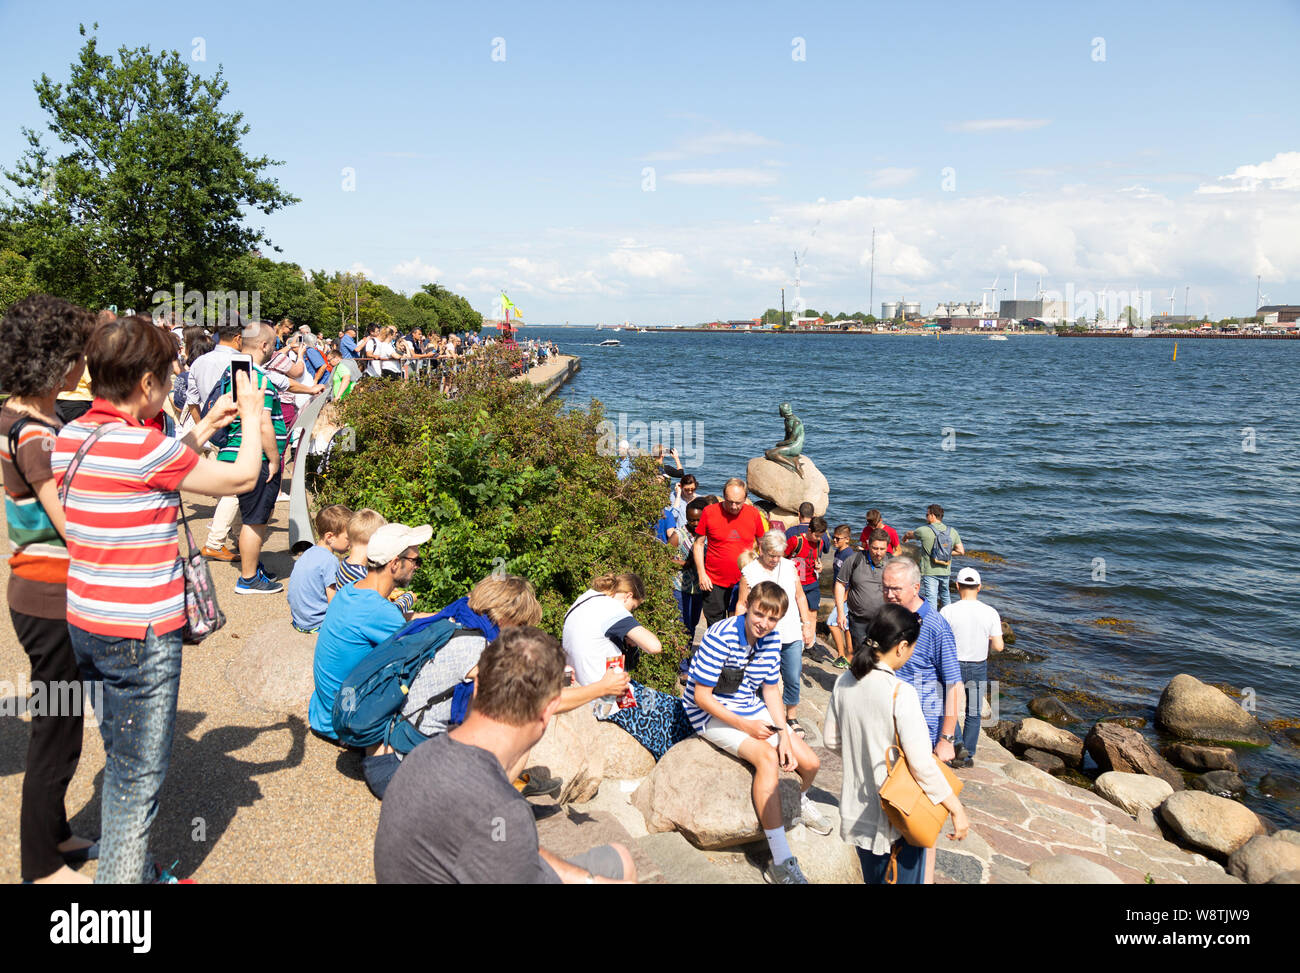 Viaggio Danimarca - persone affollate intorno a la famosa statua della Sirenetta, esempio di turismo danese; Copenhagen DANIMARCA e Scandinavia Europa Foto Stock